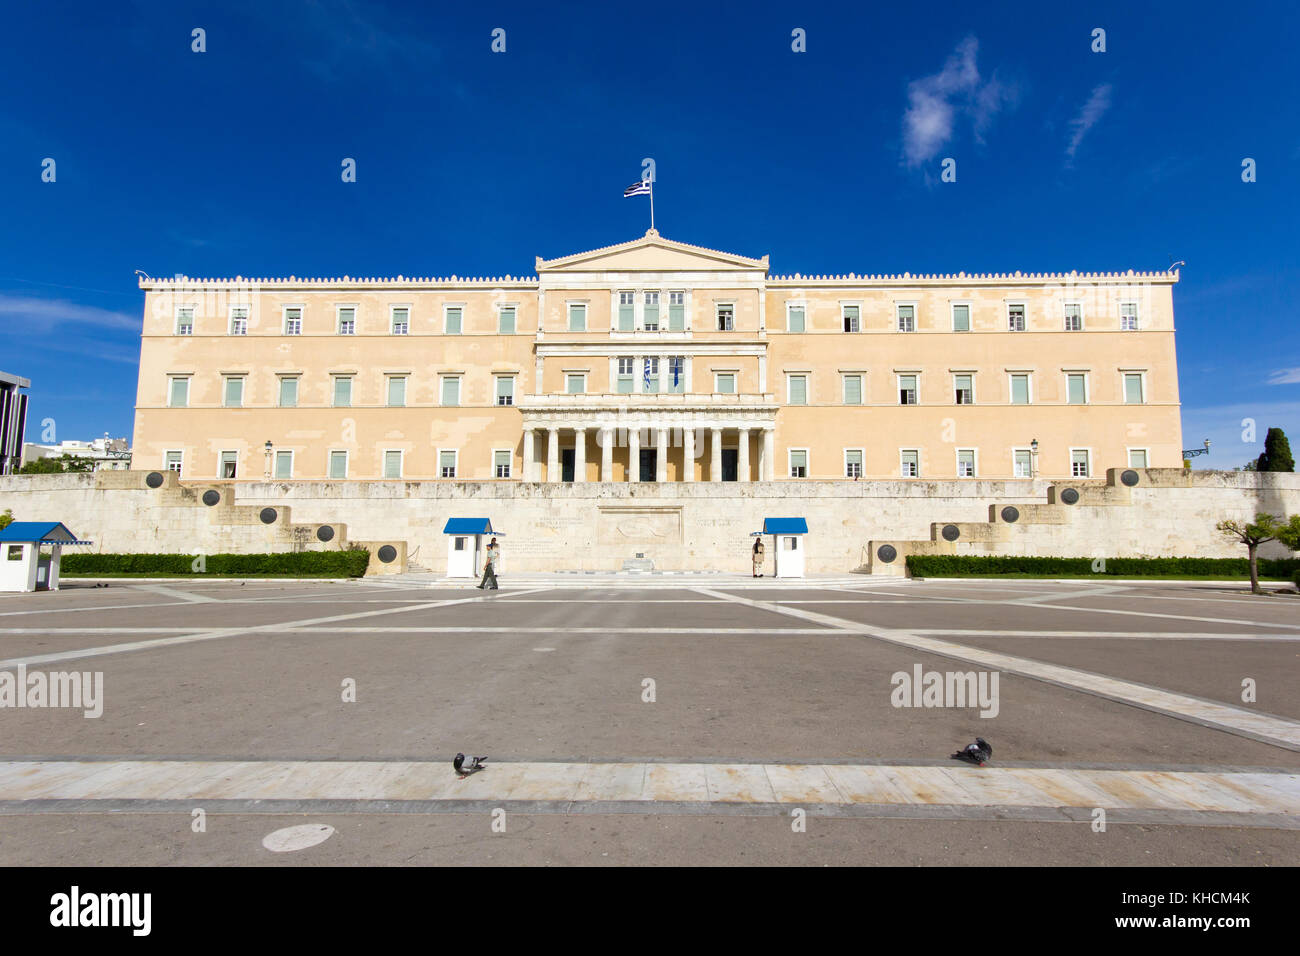 La garde présidentielle grecque appelée tsoliades habillés en uniforme traditionnel au monument du Soldat inconnu en face du parlement grec, Banque D'Images